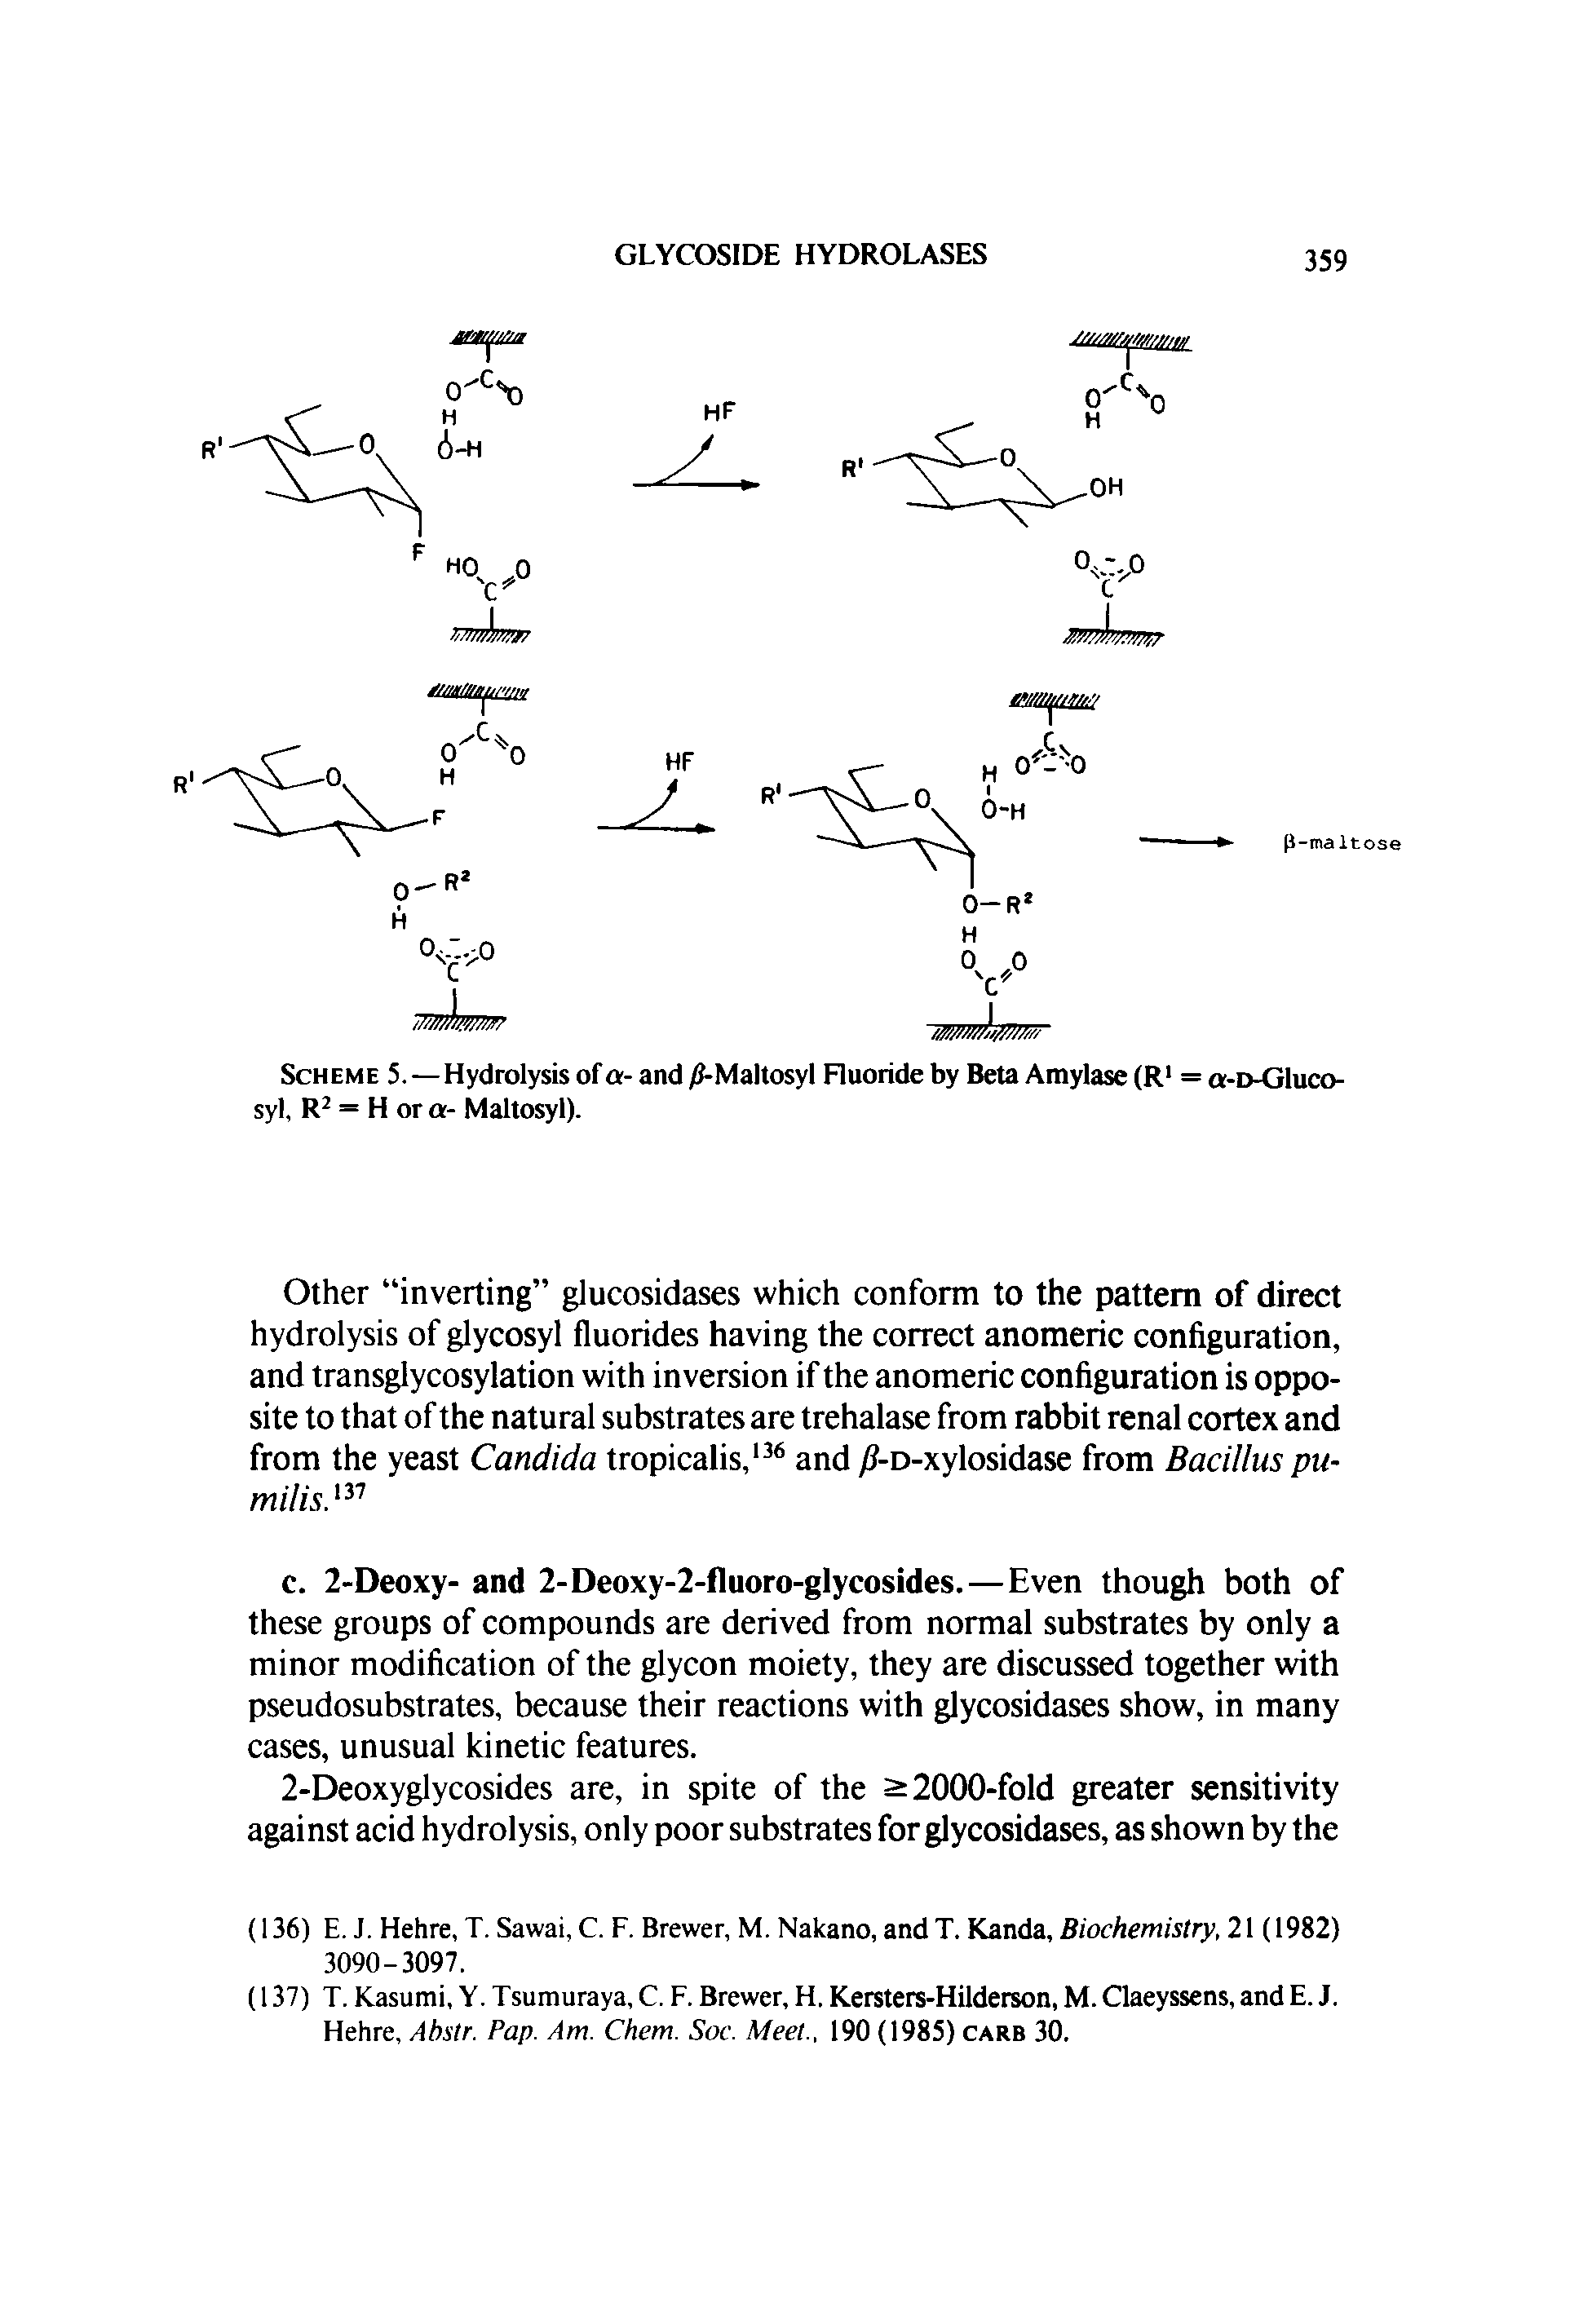 Scheme 5.—Hydrolysis of a- and /J-Maltosyl Fluoride by Beta Amylase (R = o-d-G1uco-syl, R = H or a- Maltosyl).